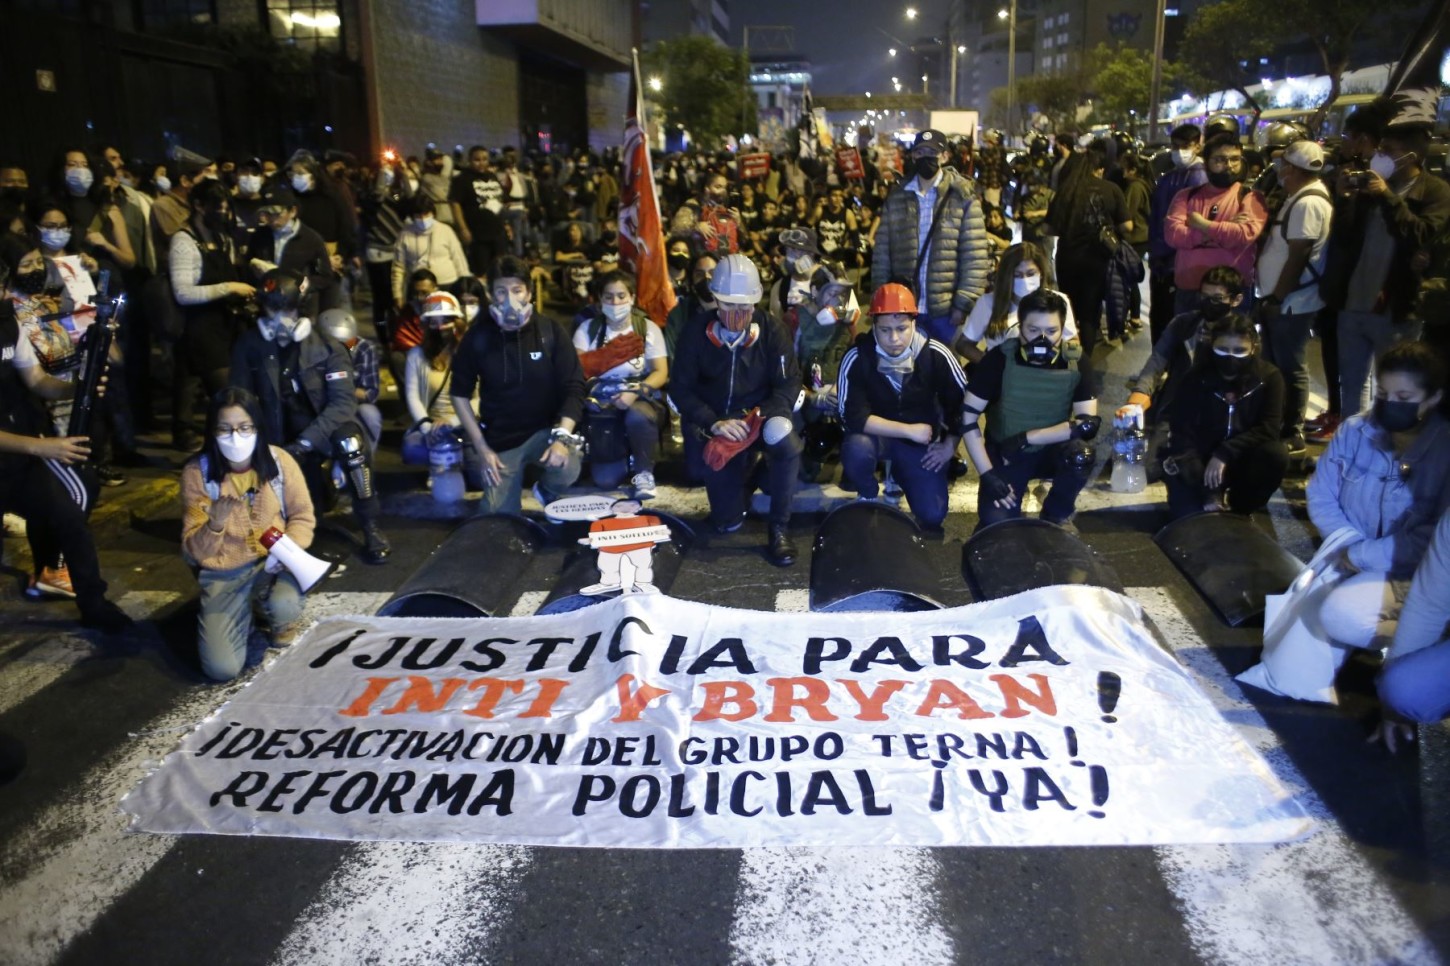 Ciudadanos salieron a marchar recordando la represión policial del 14N